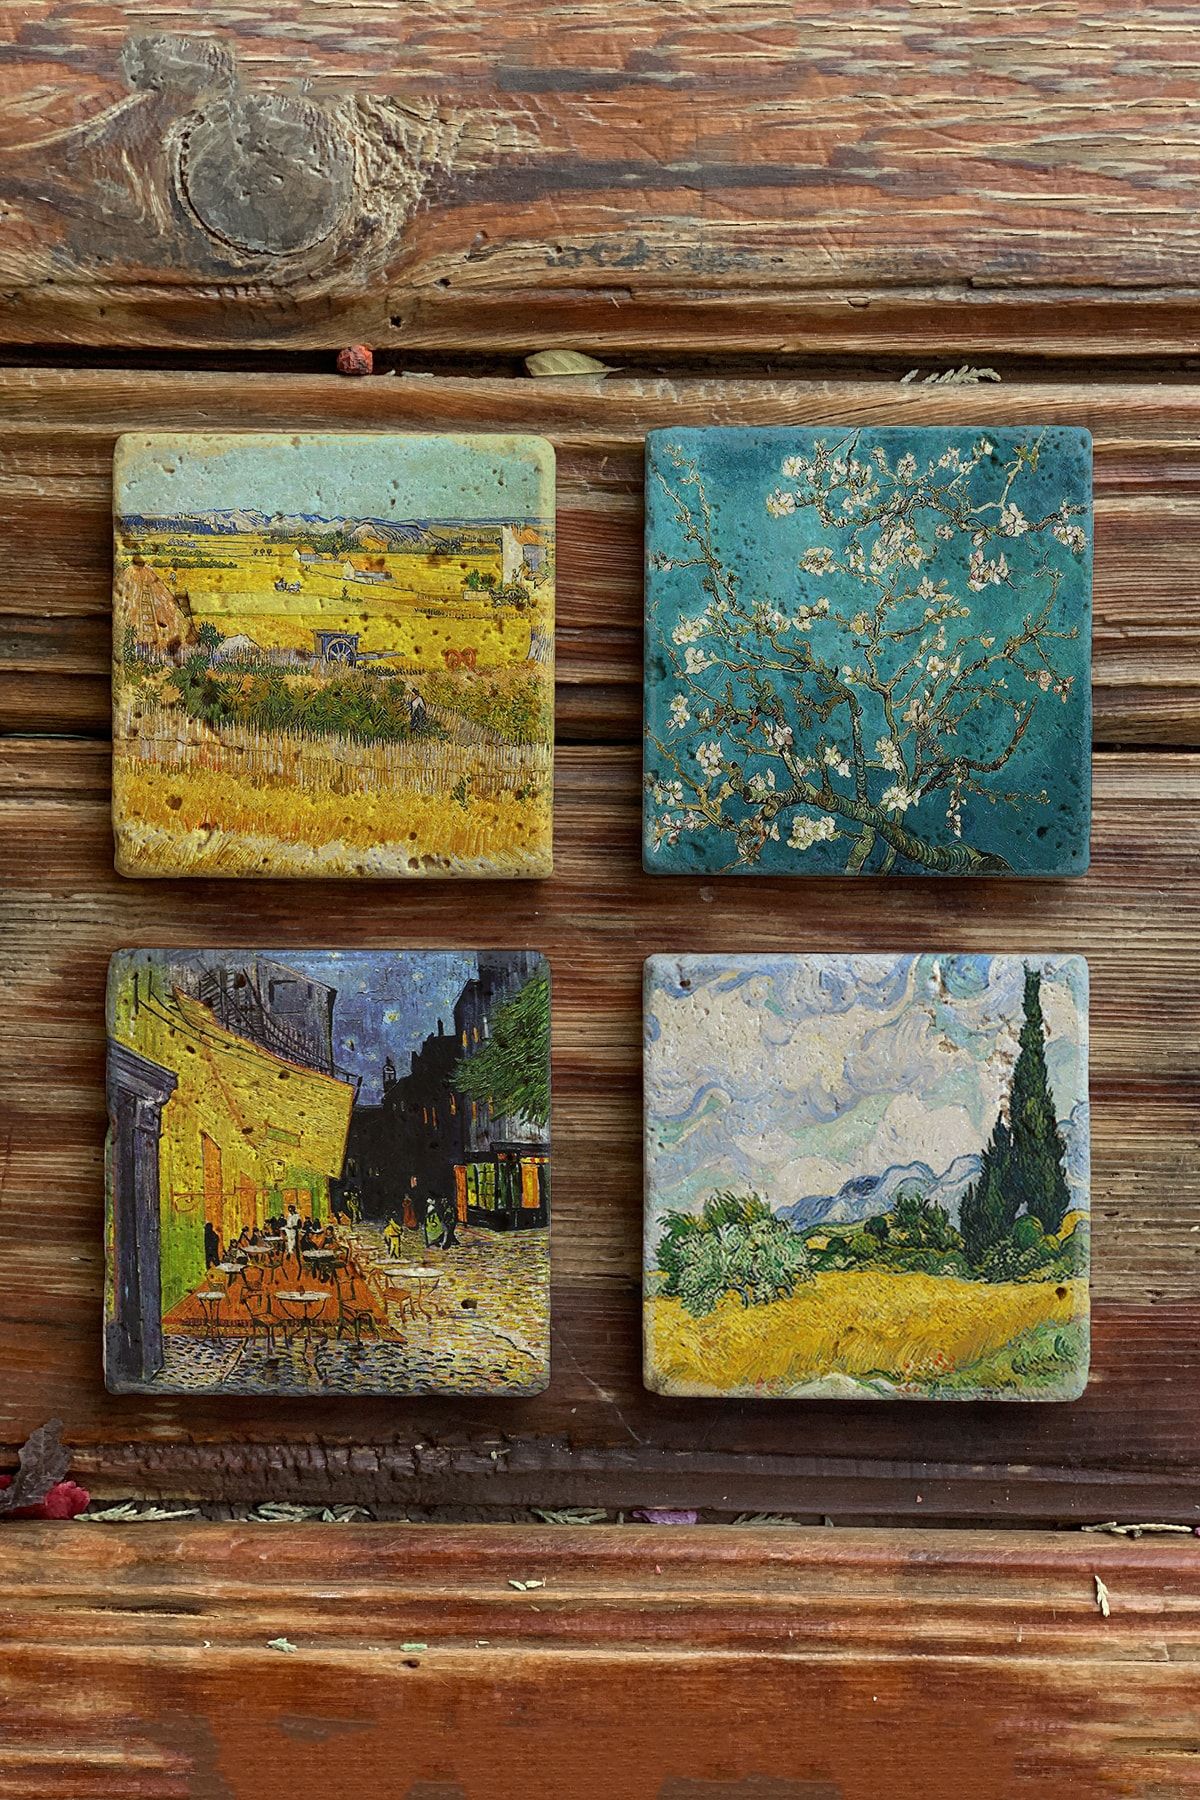 Oscar Stone Decor Taş Bardak Altlığı Stone Coasters - 4lü Set Vincent Van Gogh Tabloları